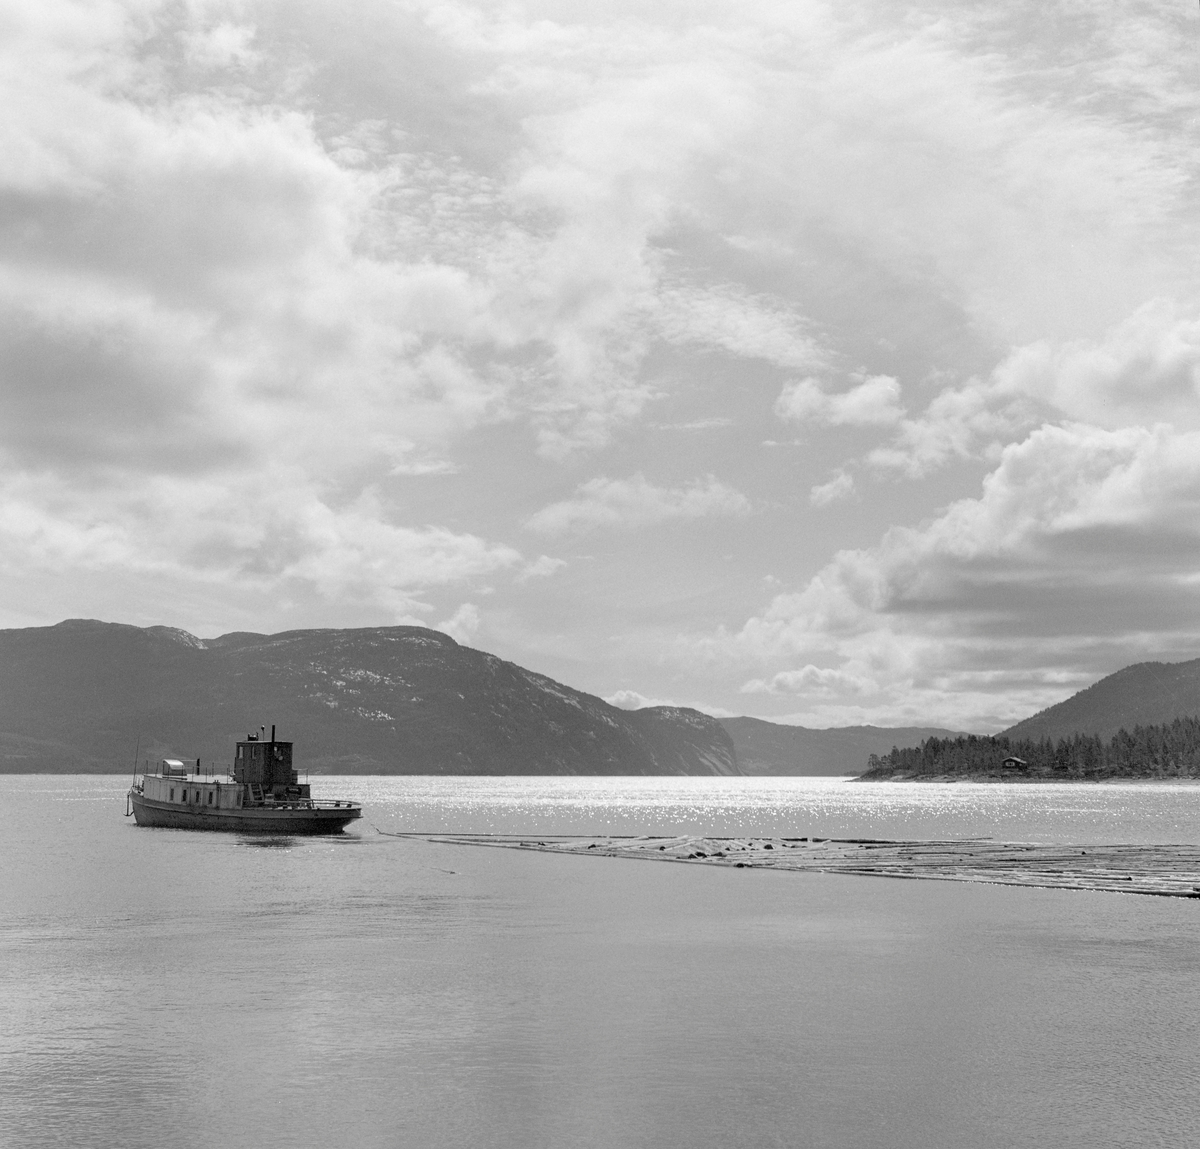 Slepebåt sleper tømmer over innsjø. Tømmersleping med slepebåten M/S Teisner på Fyresvatnet, Fyresdal, Telemark. Skipper Gunnar Sandvik . Båten ble bygd på Akers mekaniske verksted, og var opprinnelig en kombinert passasjer- og slepebåt fra 1876, Den fikk navnet M/S Teisner i 1913. Etterhvert ble det en ren slepebåt. Etter at tømmertransporten forsvant i 1971, ble båten tatt vare på av "Reiarlaget Teisners vener", men i 1990 ble båten dratt på land. Fyresvatn.